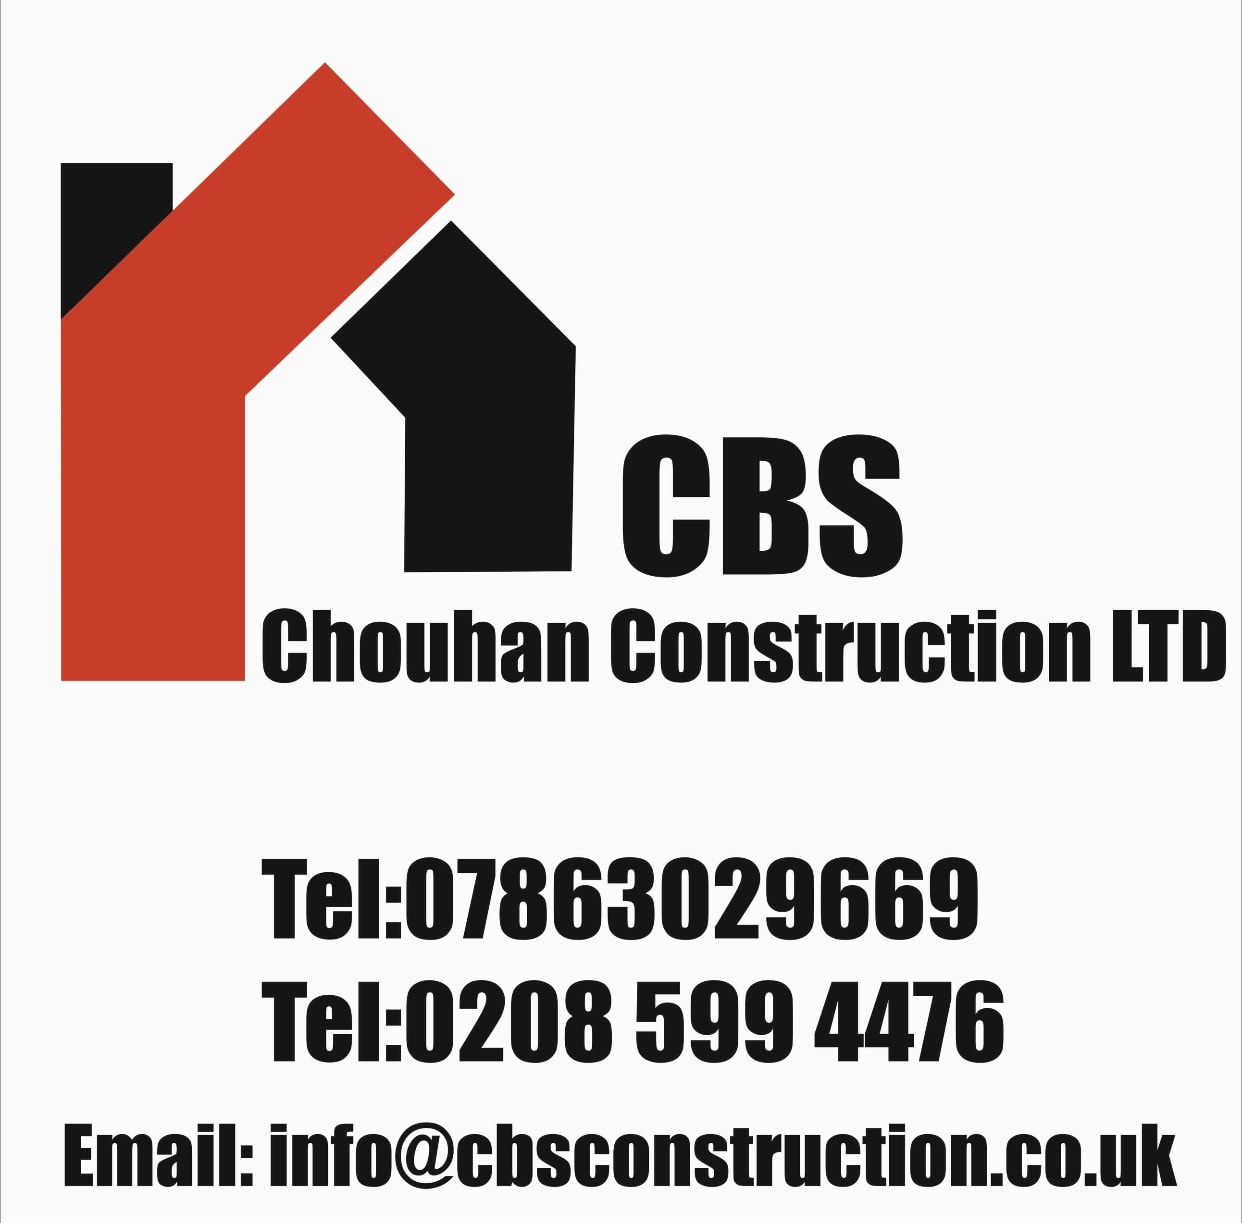 Chouhan Construction Ltd